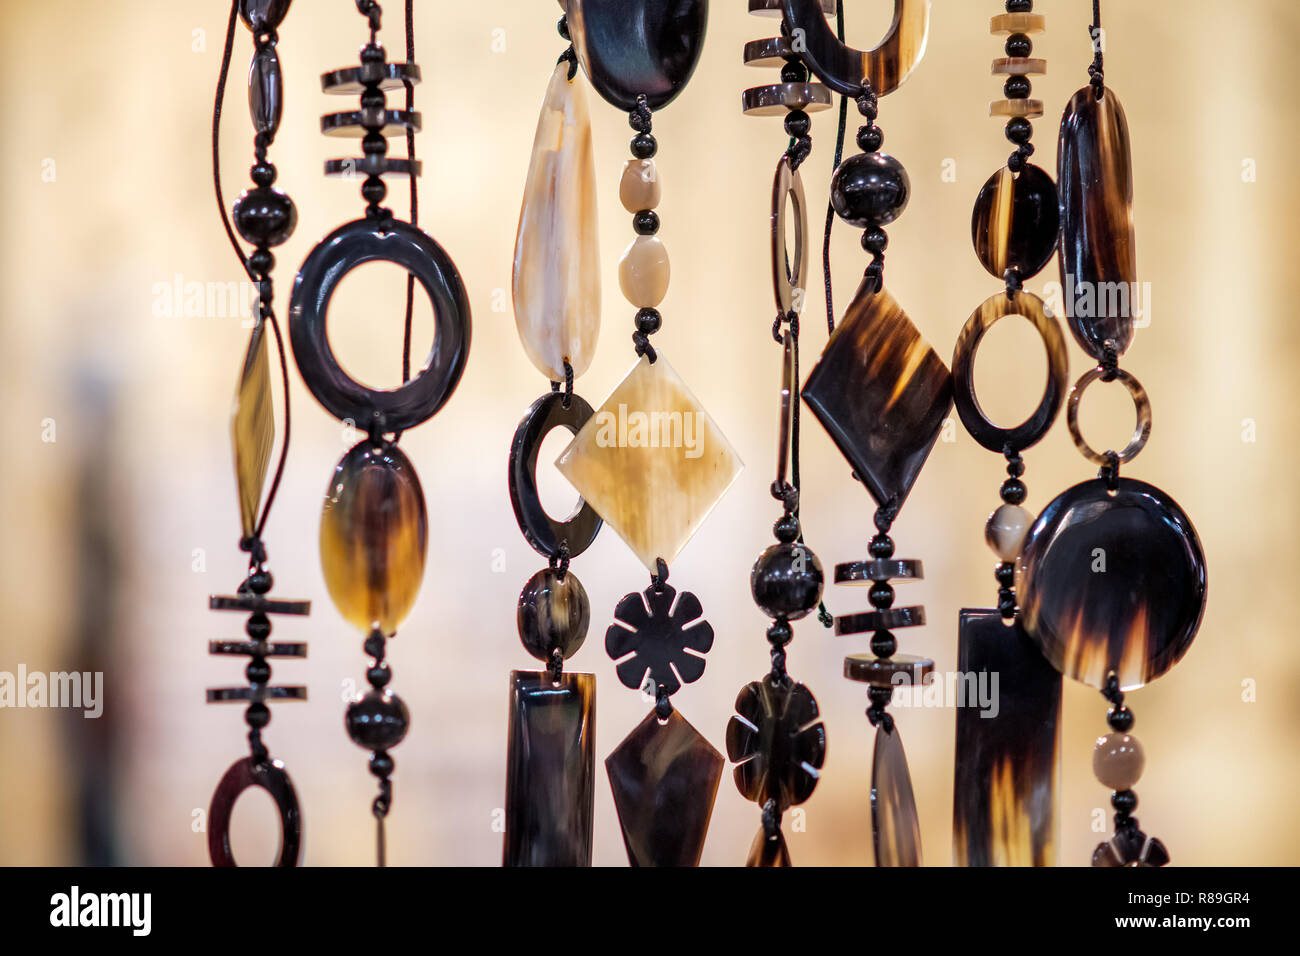 Colliers suspendus dans street market shop avec décorations américaines traditionnelles. Close-up vue latérale avec un fond brun trouble Banque D'Images